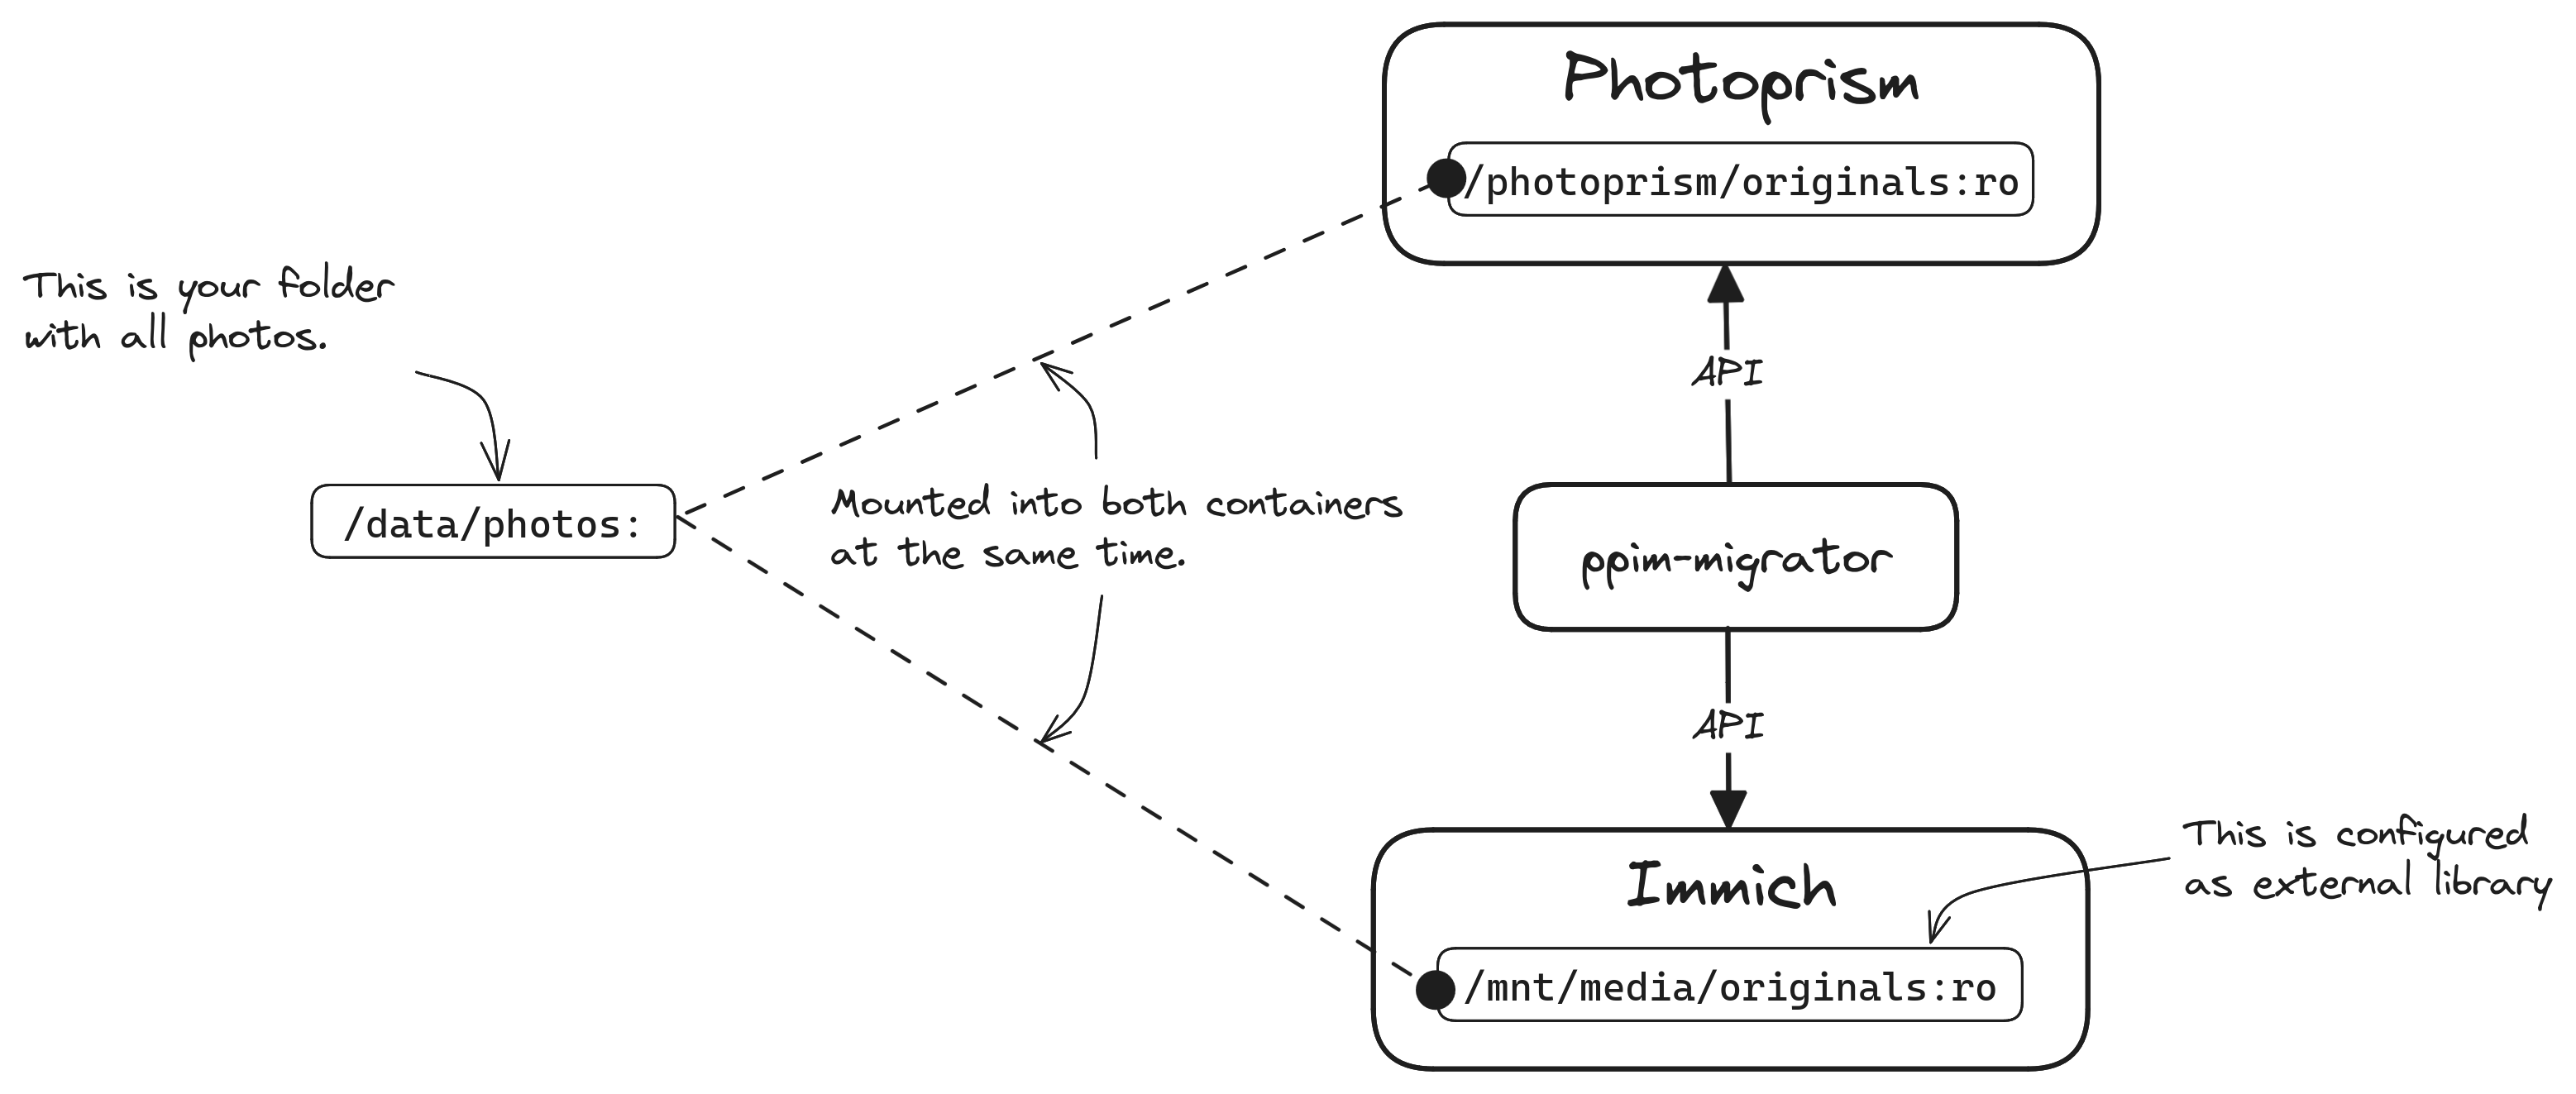 ppim-migrator-diagram